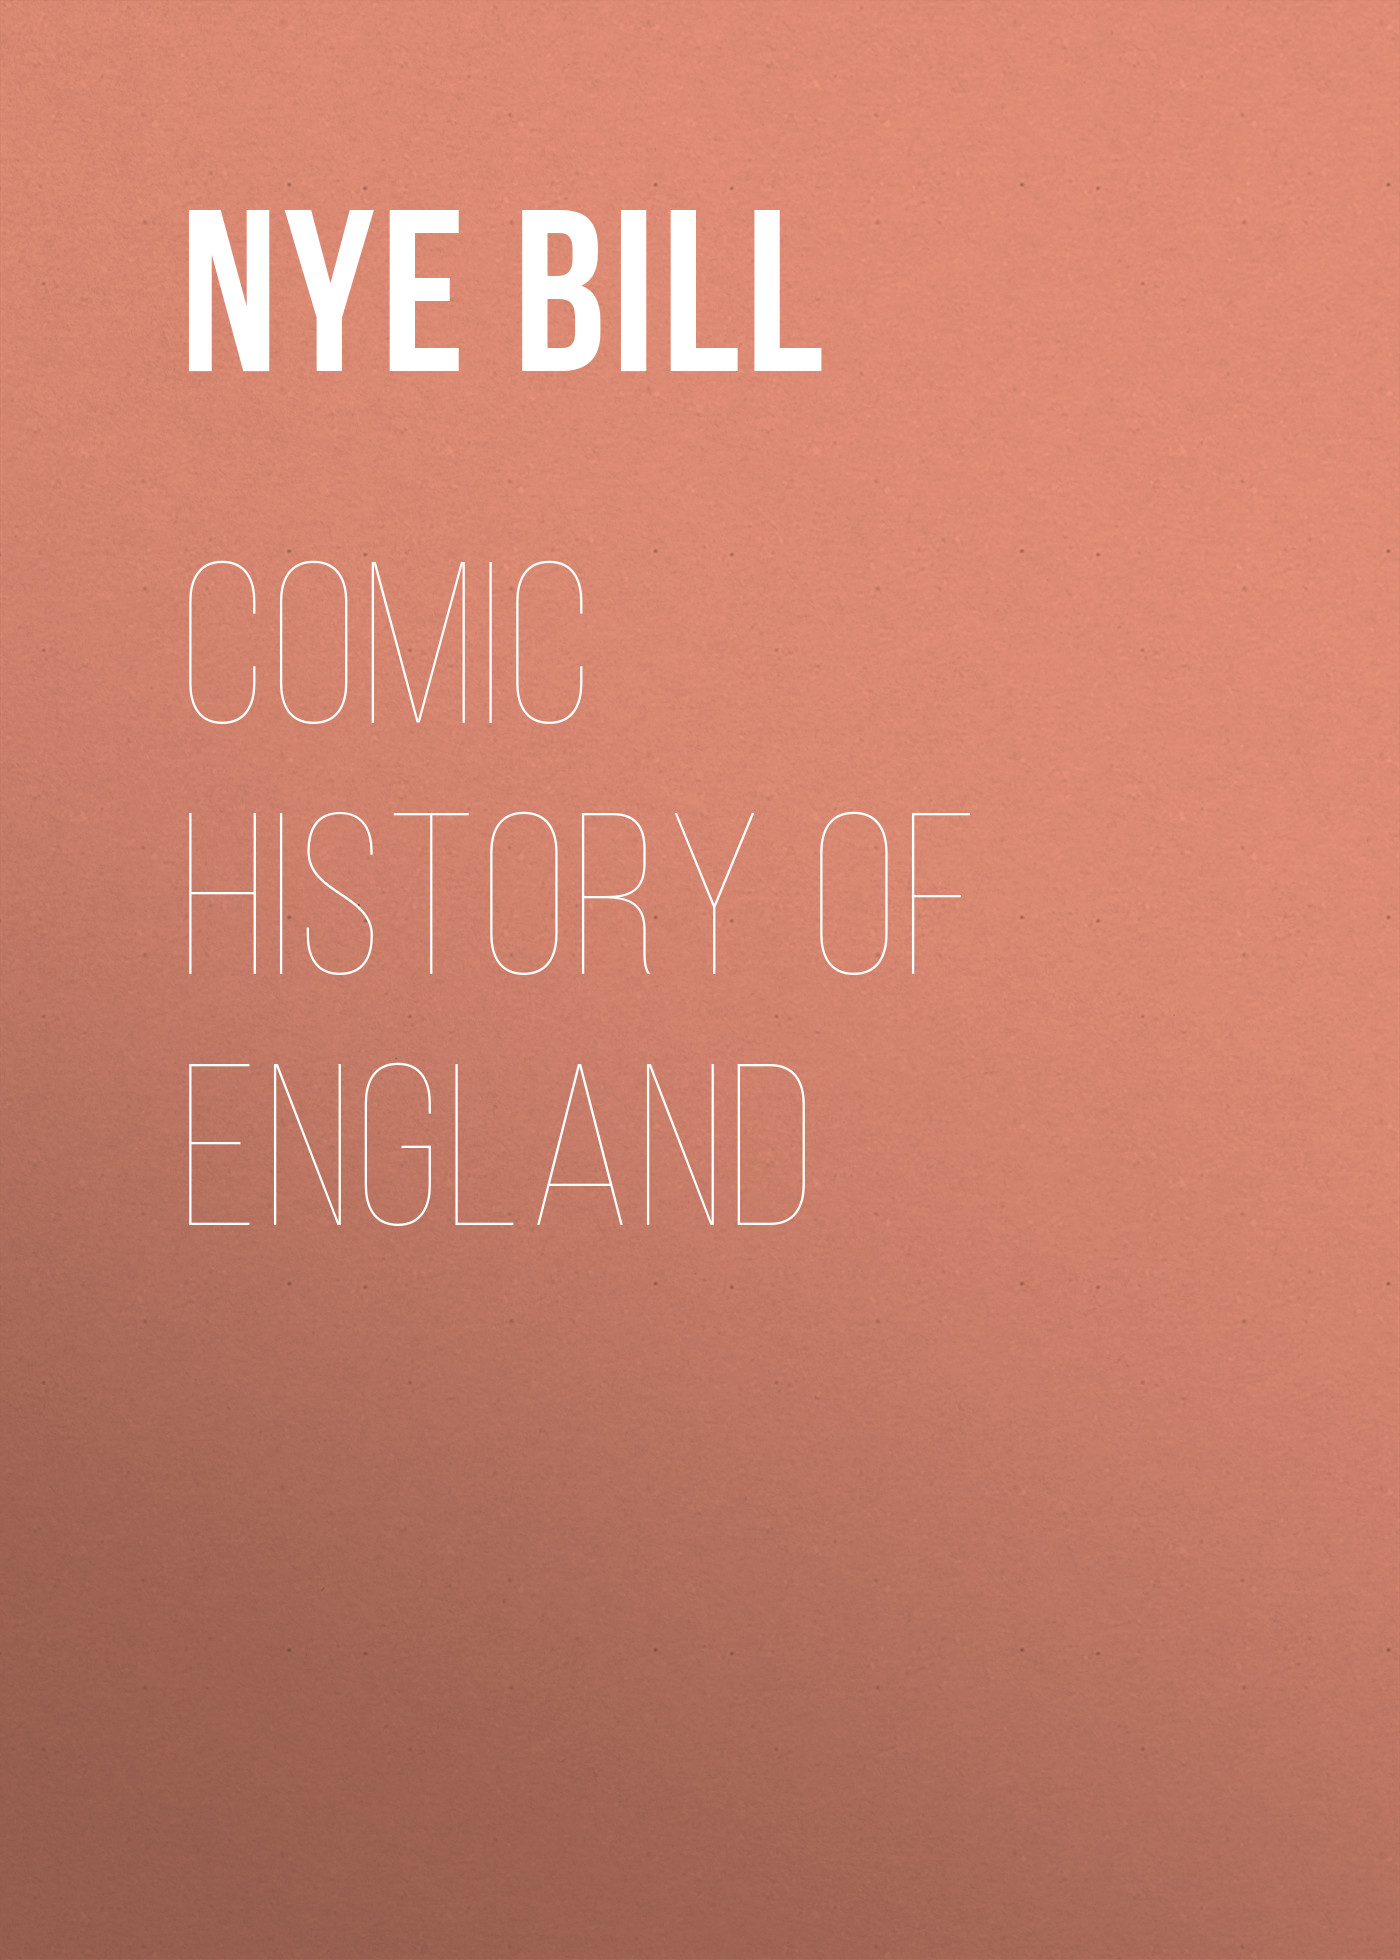 Книга Comic History of England из серии , созданная Bill Nye, может относится к жанру Зарубежный юмор, Зарубежная старинная литература, Зарубежная классика. Стоимость электронной книги Comic History of England с идентификатором 42627315 составляет 0 руб.